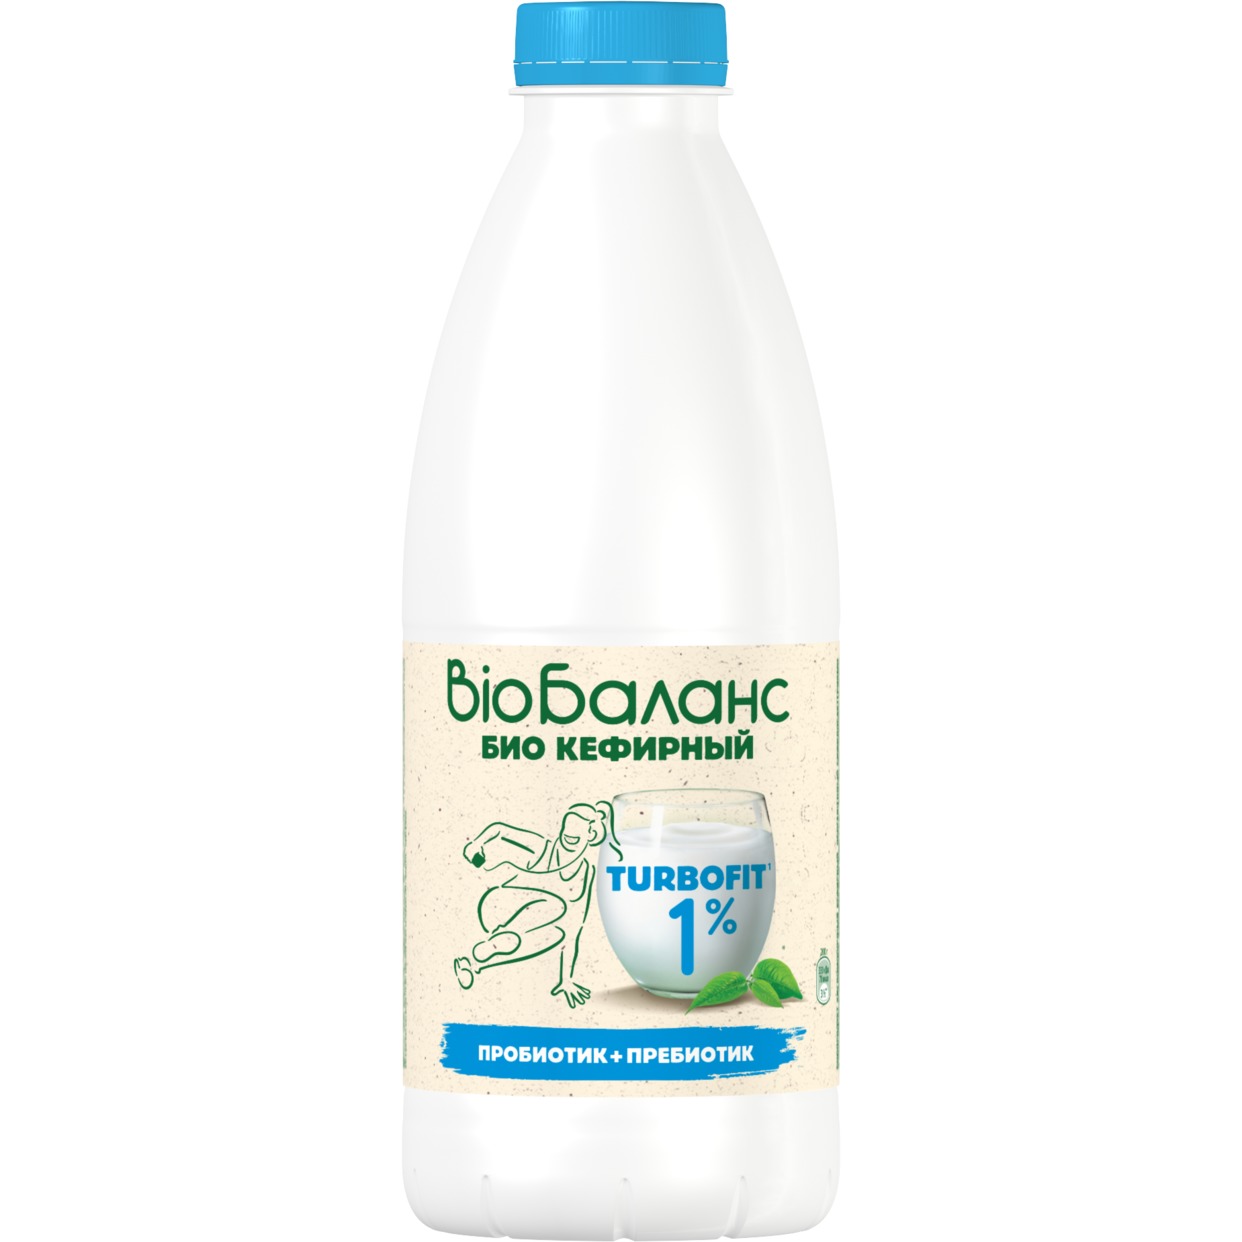 Биопродукт кисломолочный кефирный, обогащенный бифидобактериями и пребиотиком инулином, массовая доля дира 1,0%, 930 гр